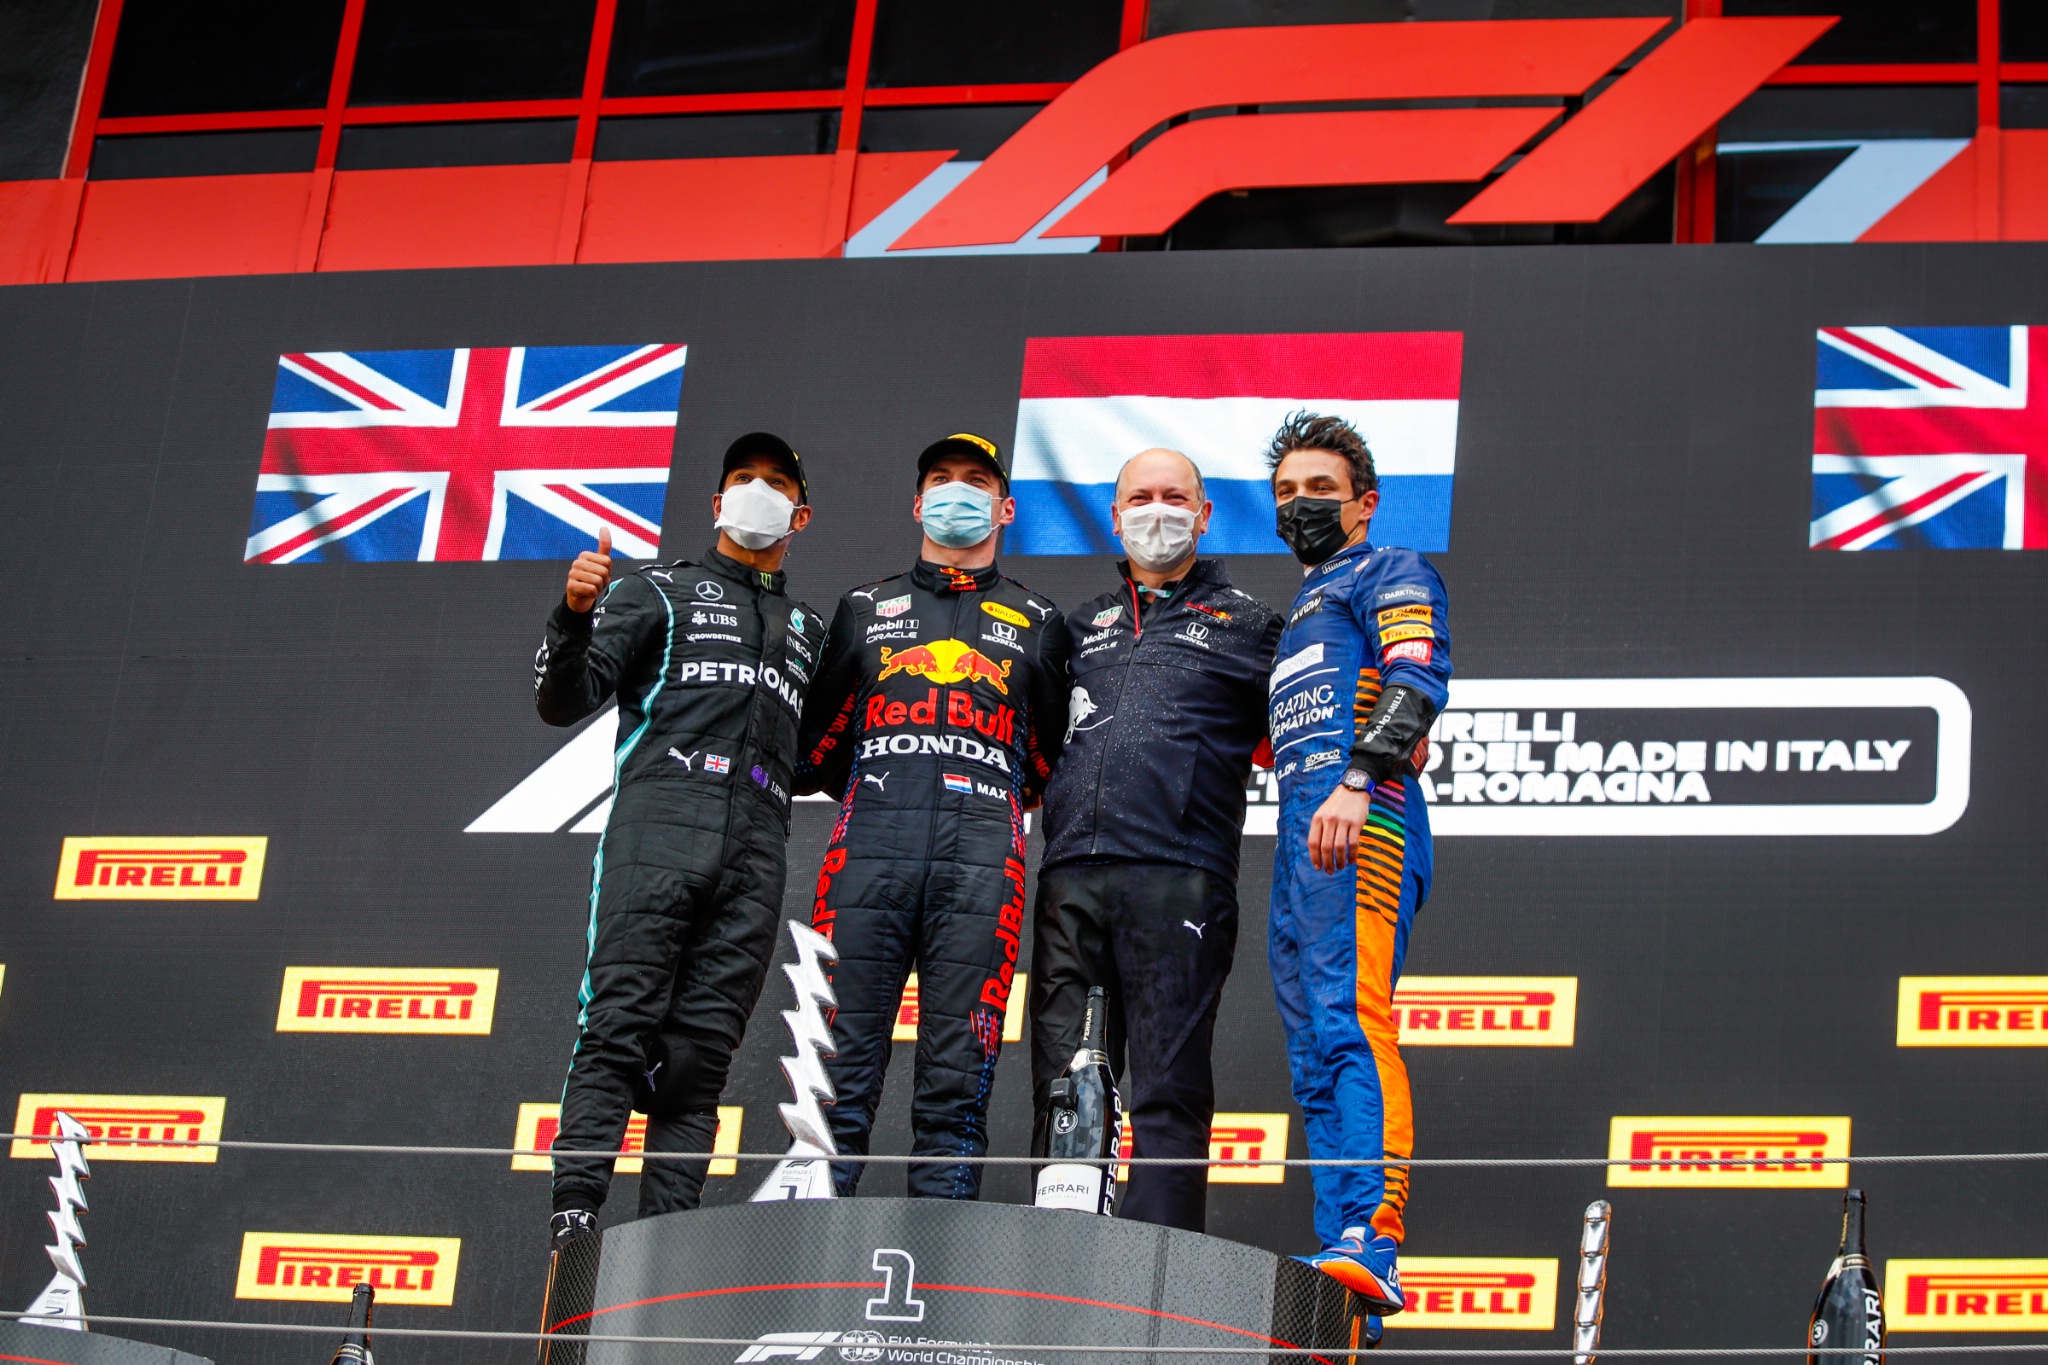 Podium (L ke Kanan): Lewis Hamilton (GBR) Mercedes AMG F1, kedua; Max Verstappen (NLD) Red Bull Racing, pemenang balapan; Karl